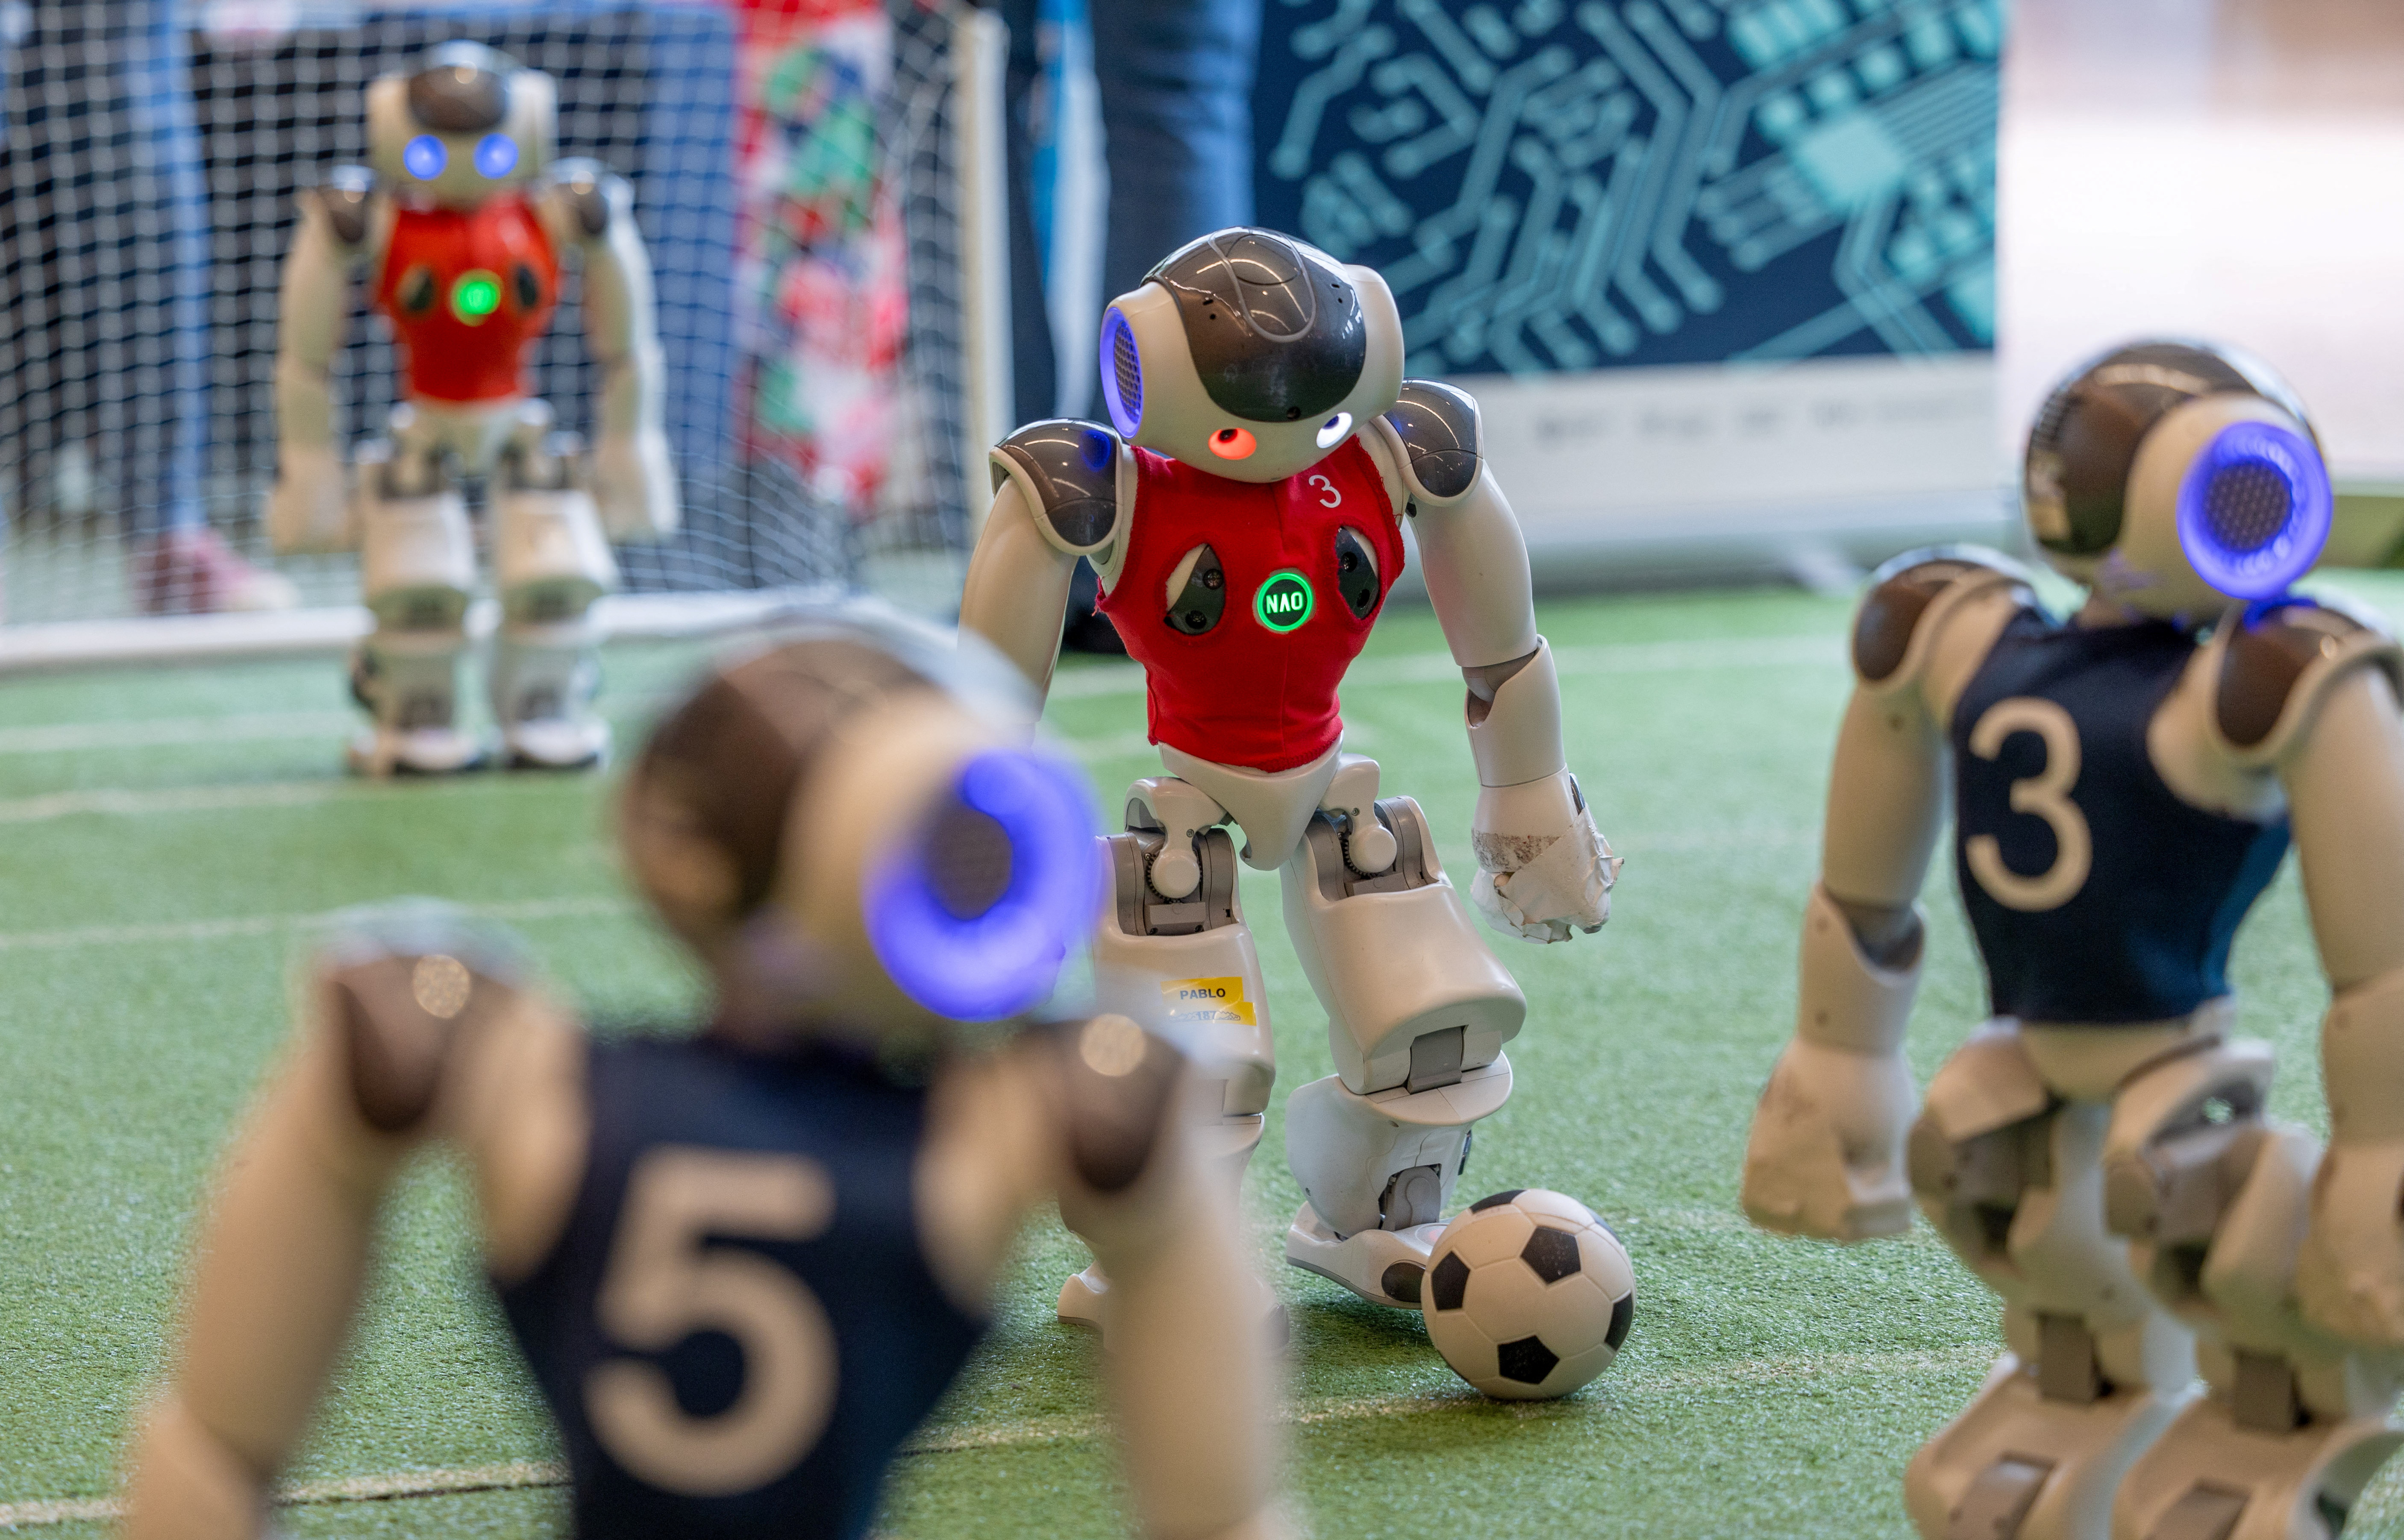 Robots Play Soccer at Geneva AI Expo